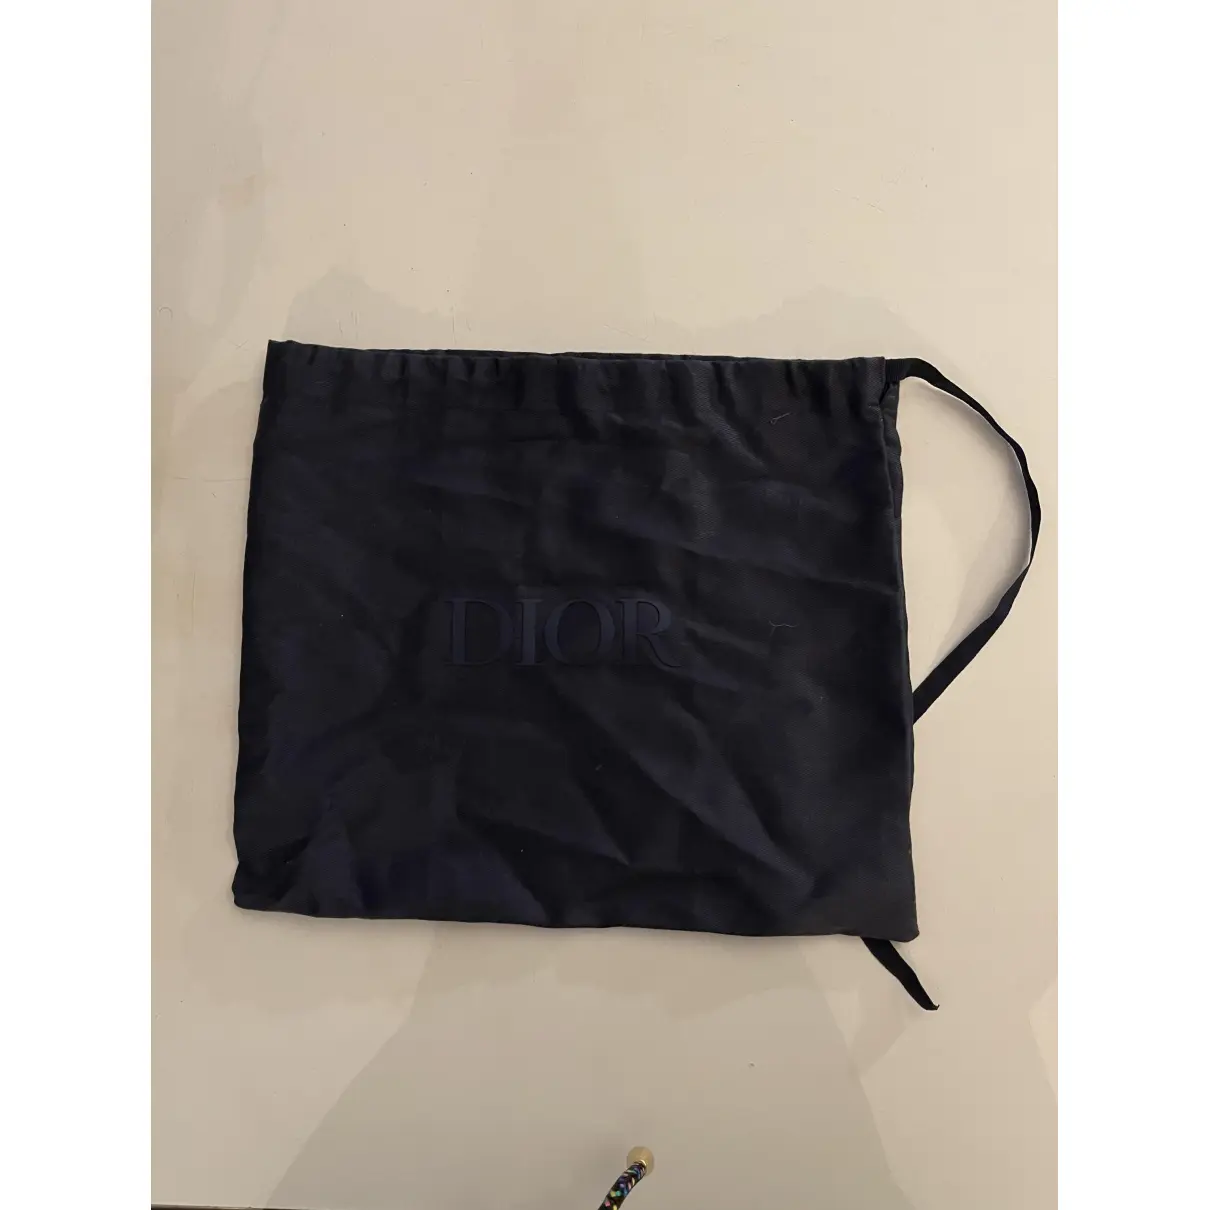 Buy Dior Homme Cloth bag online